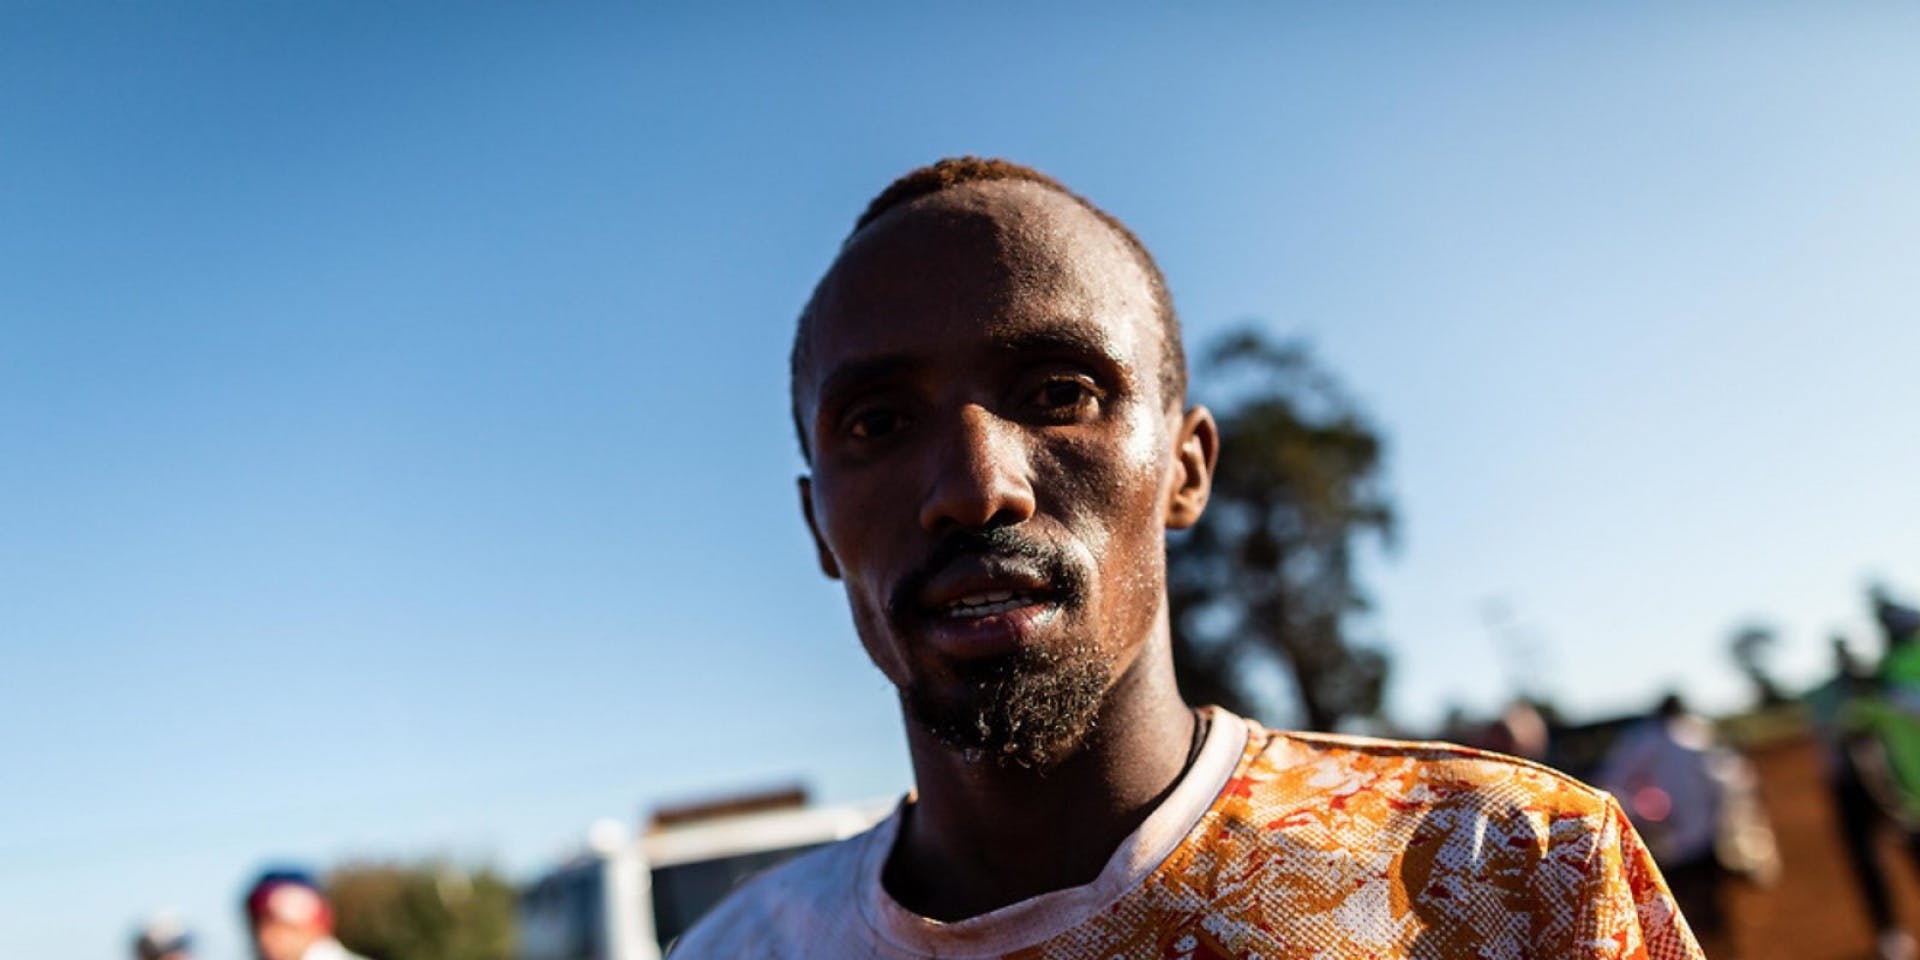 Abdi Nageeye για τον μαραθώνιο του Ρότερνταμ: «Θα είναι φανταστικό να τρέξω 2:04 και να ανέβω στο βάθρο»